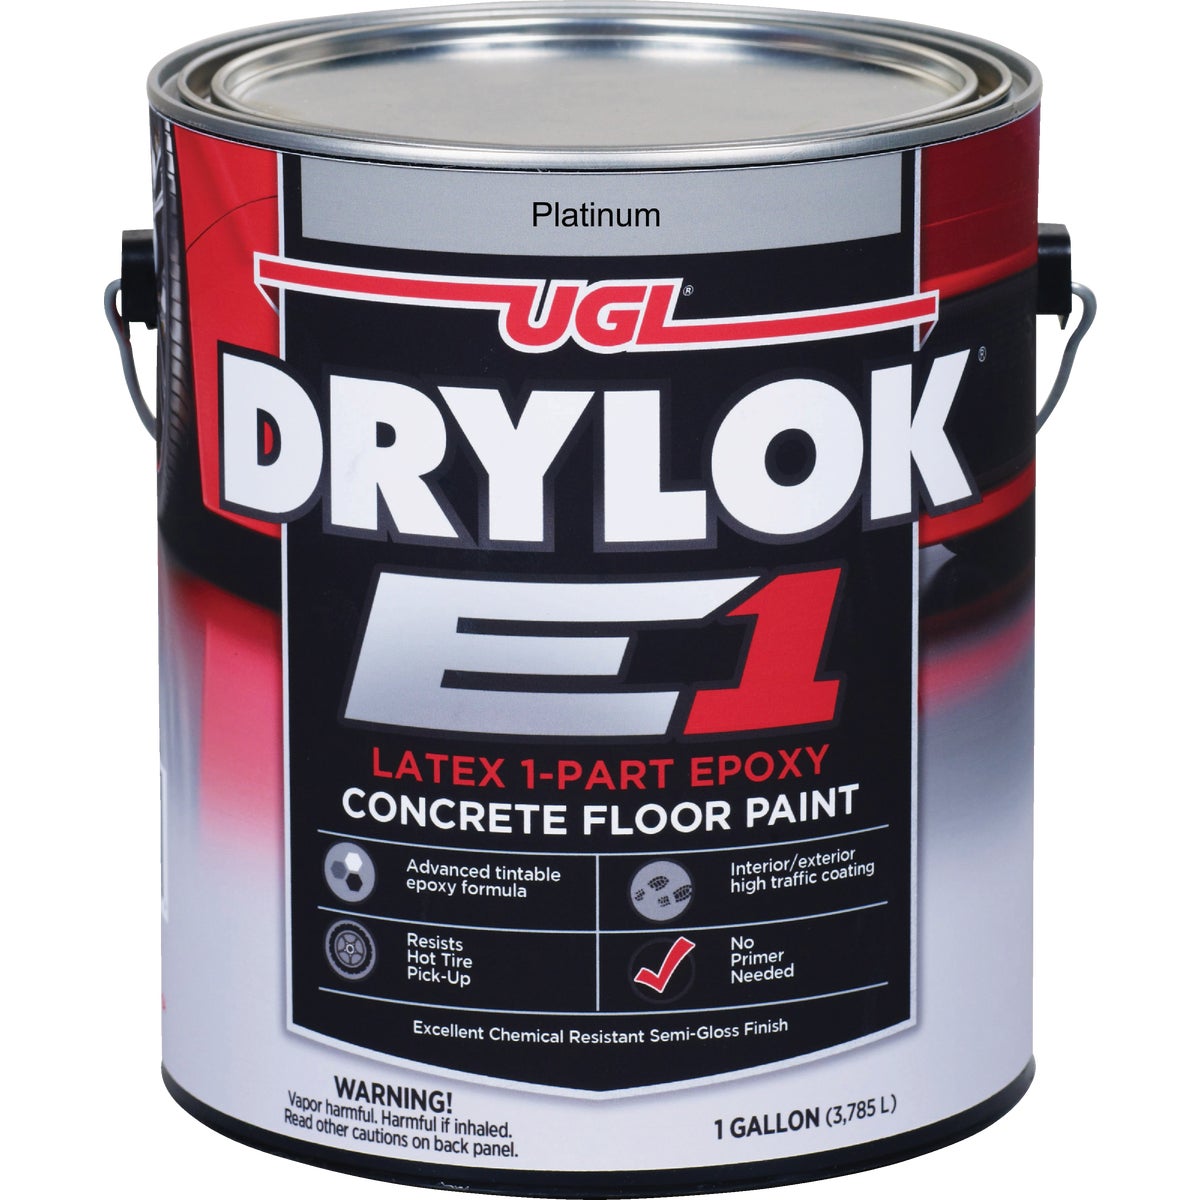 DRYLOK E1 One-Part Epoxy Concrete Floor Paint Platinum, 1 Gal.